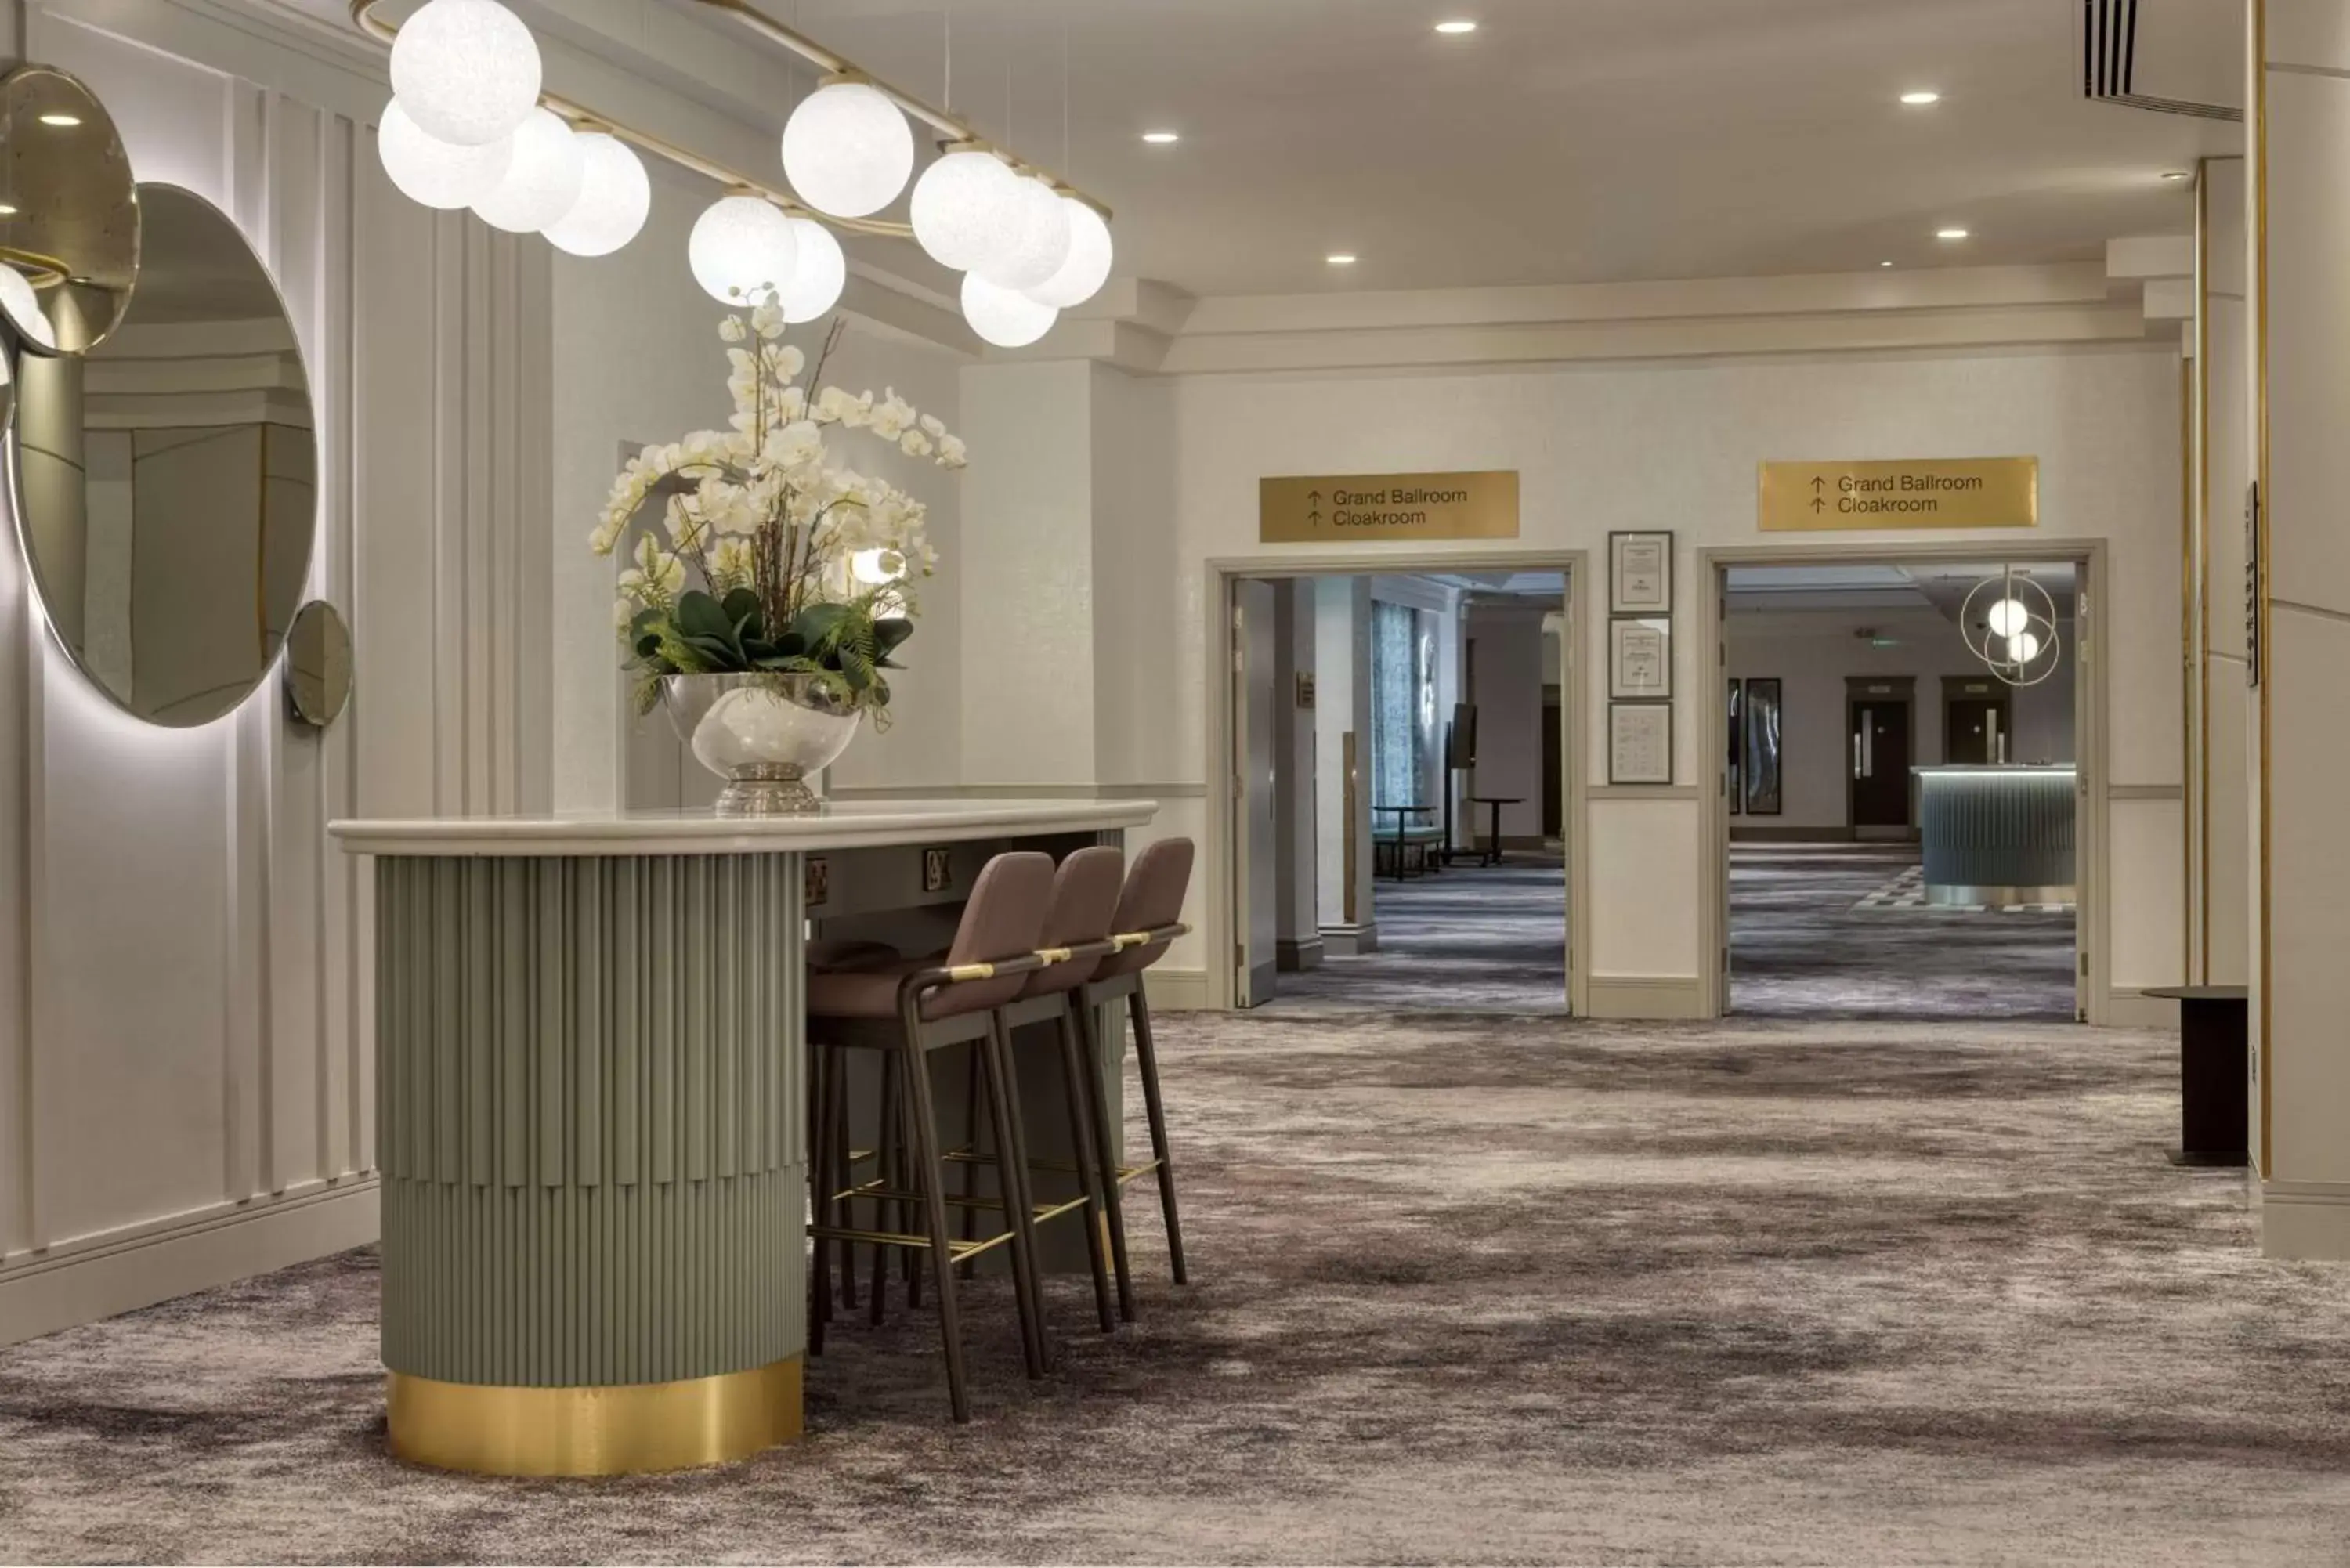 Lobby or reception in Hilton Glasgow